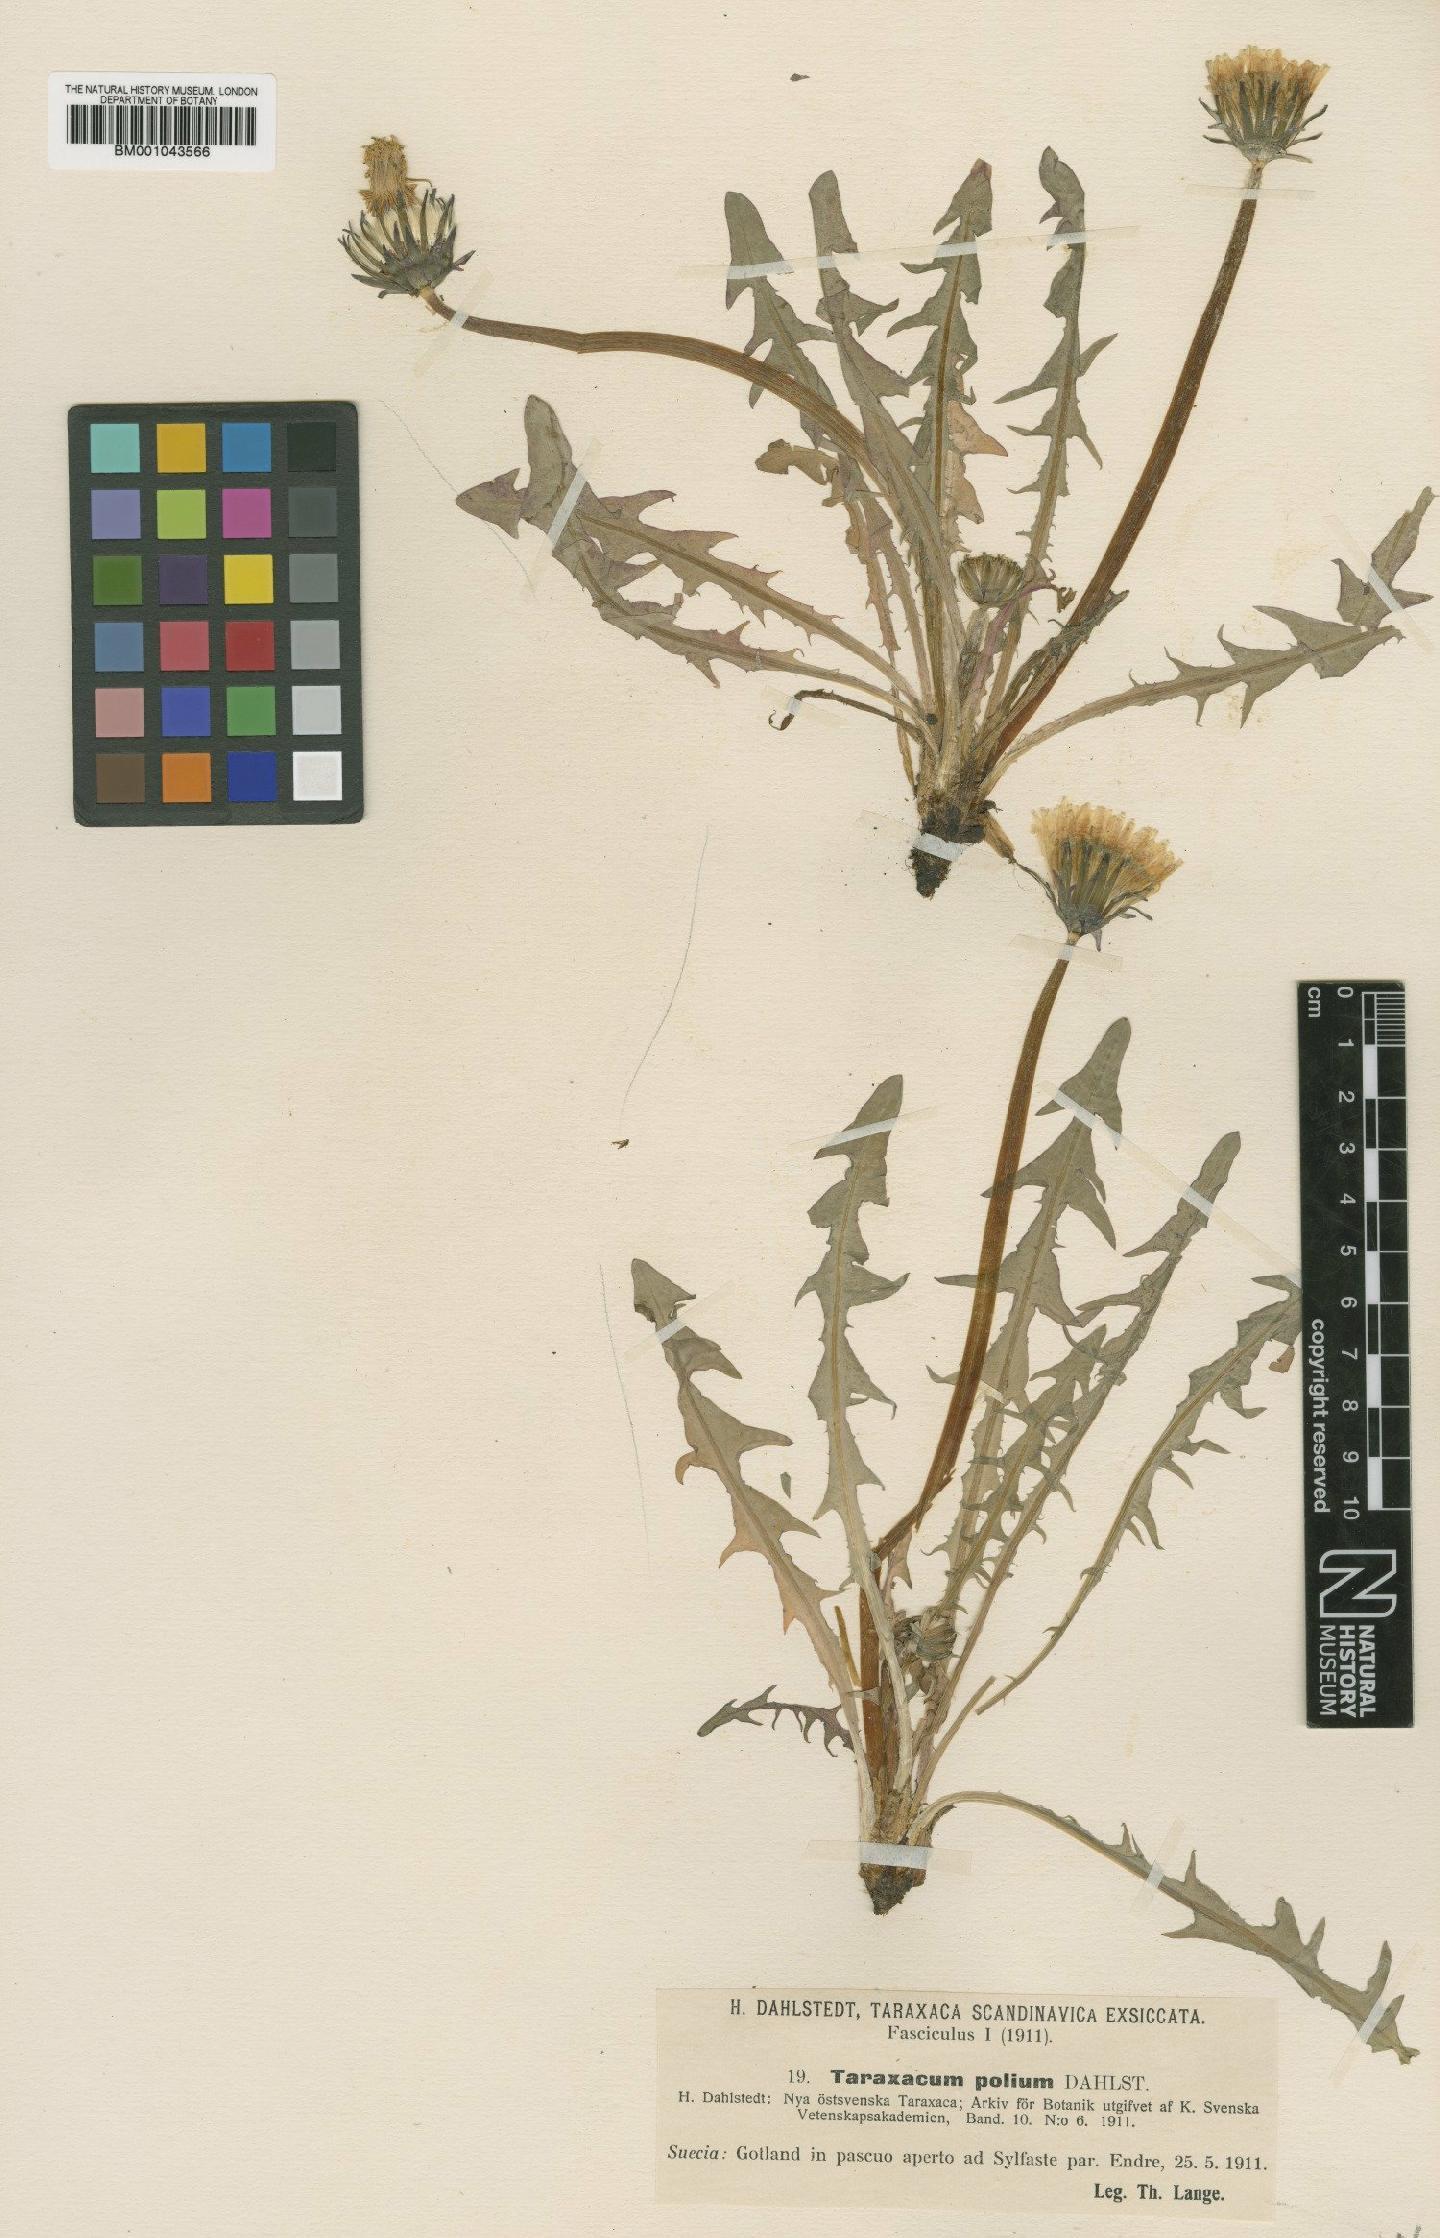 To NHMUK collection (Taraxacum polium Dahlst.; Type; NHMUK:ecatalogue:2201141)